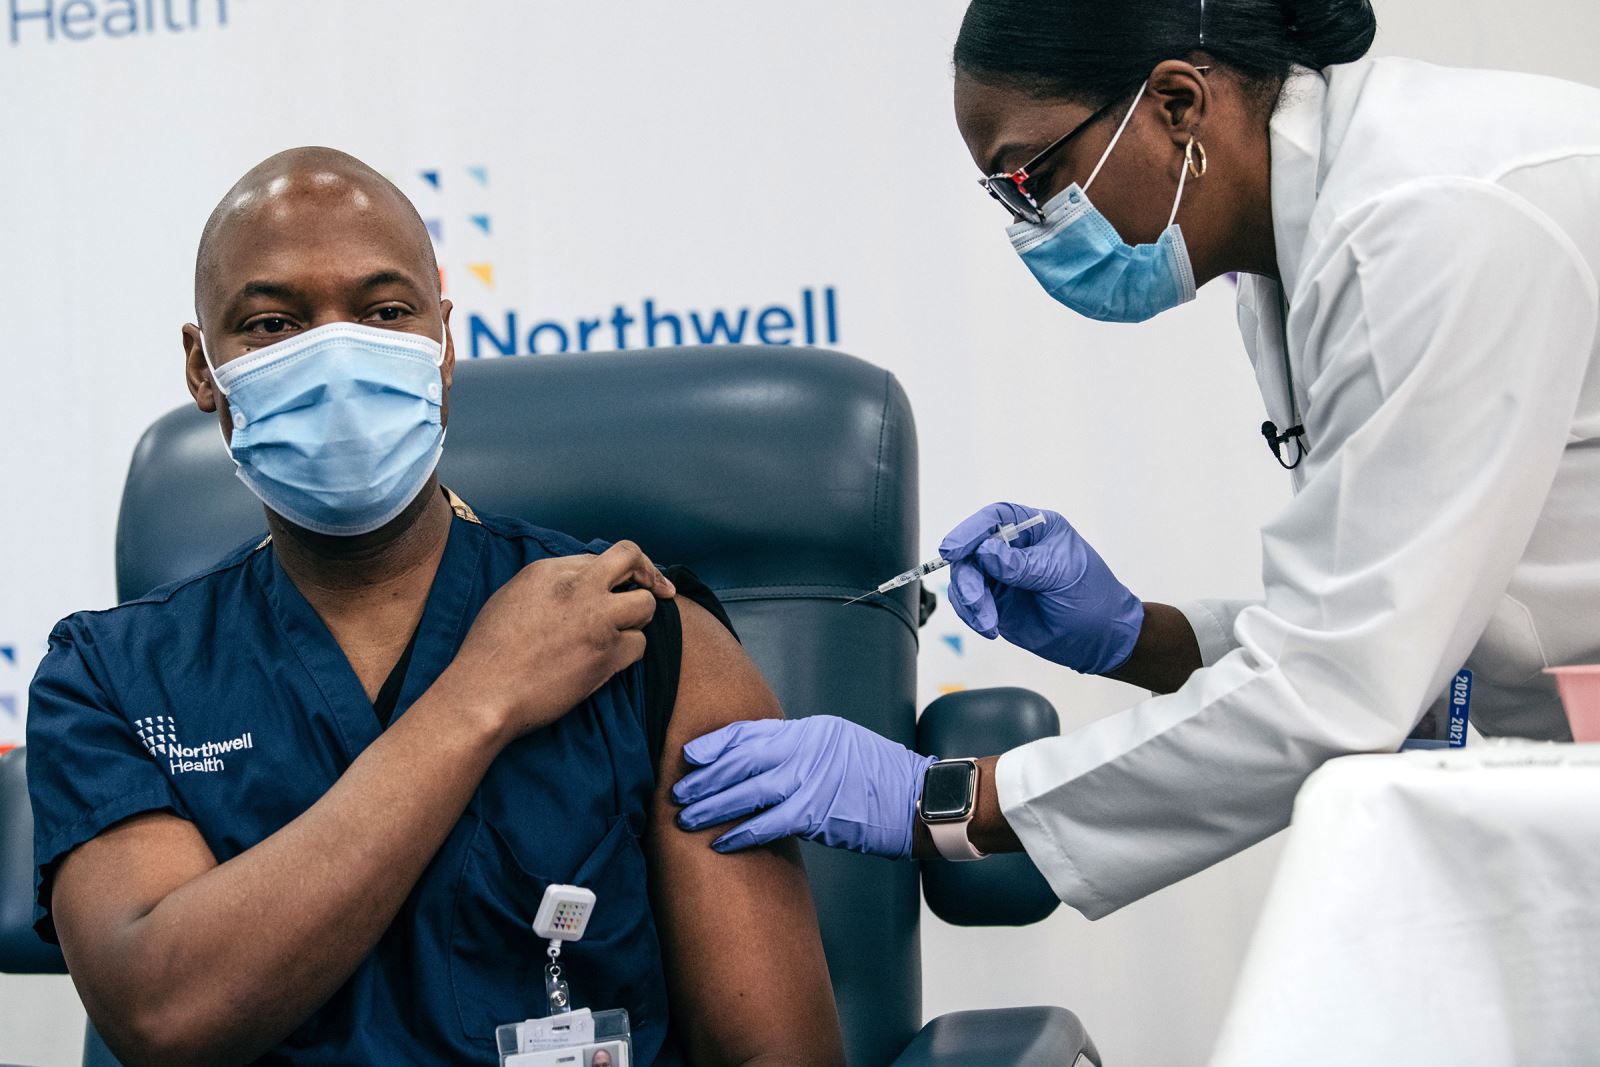 Tiêm chủng vaccine COVID-19 tại thành phố New York ngày 14/12. Ảnh: Getty Images